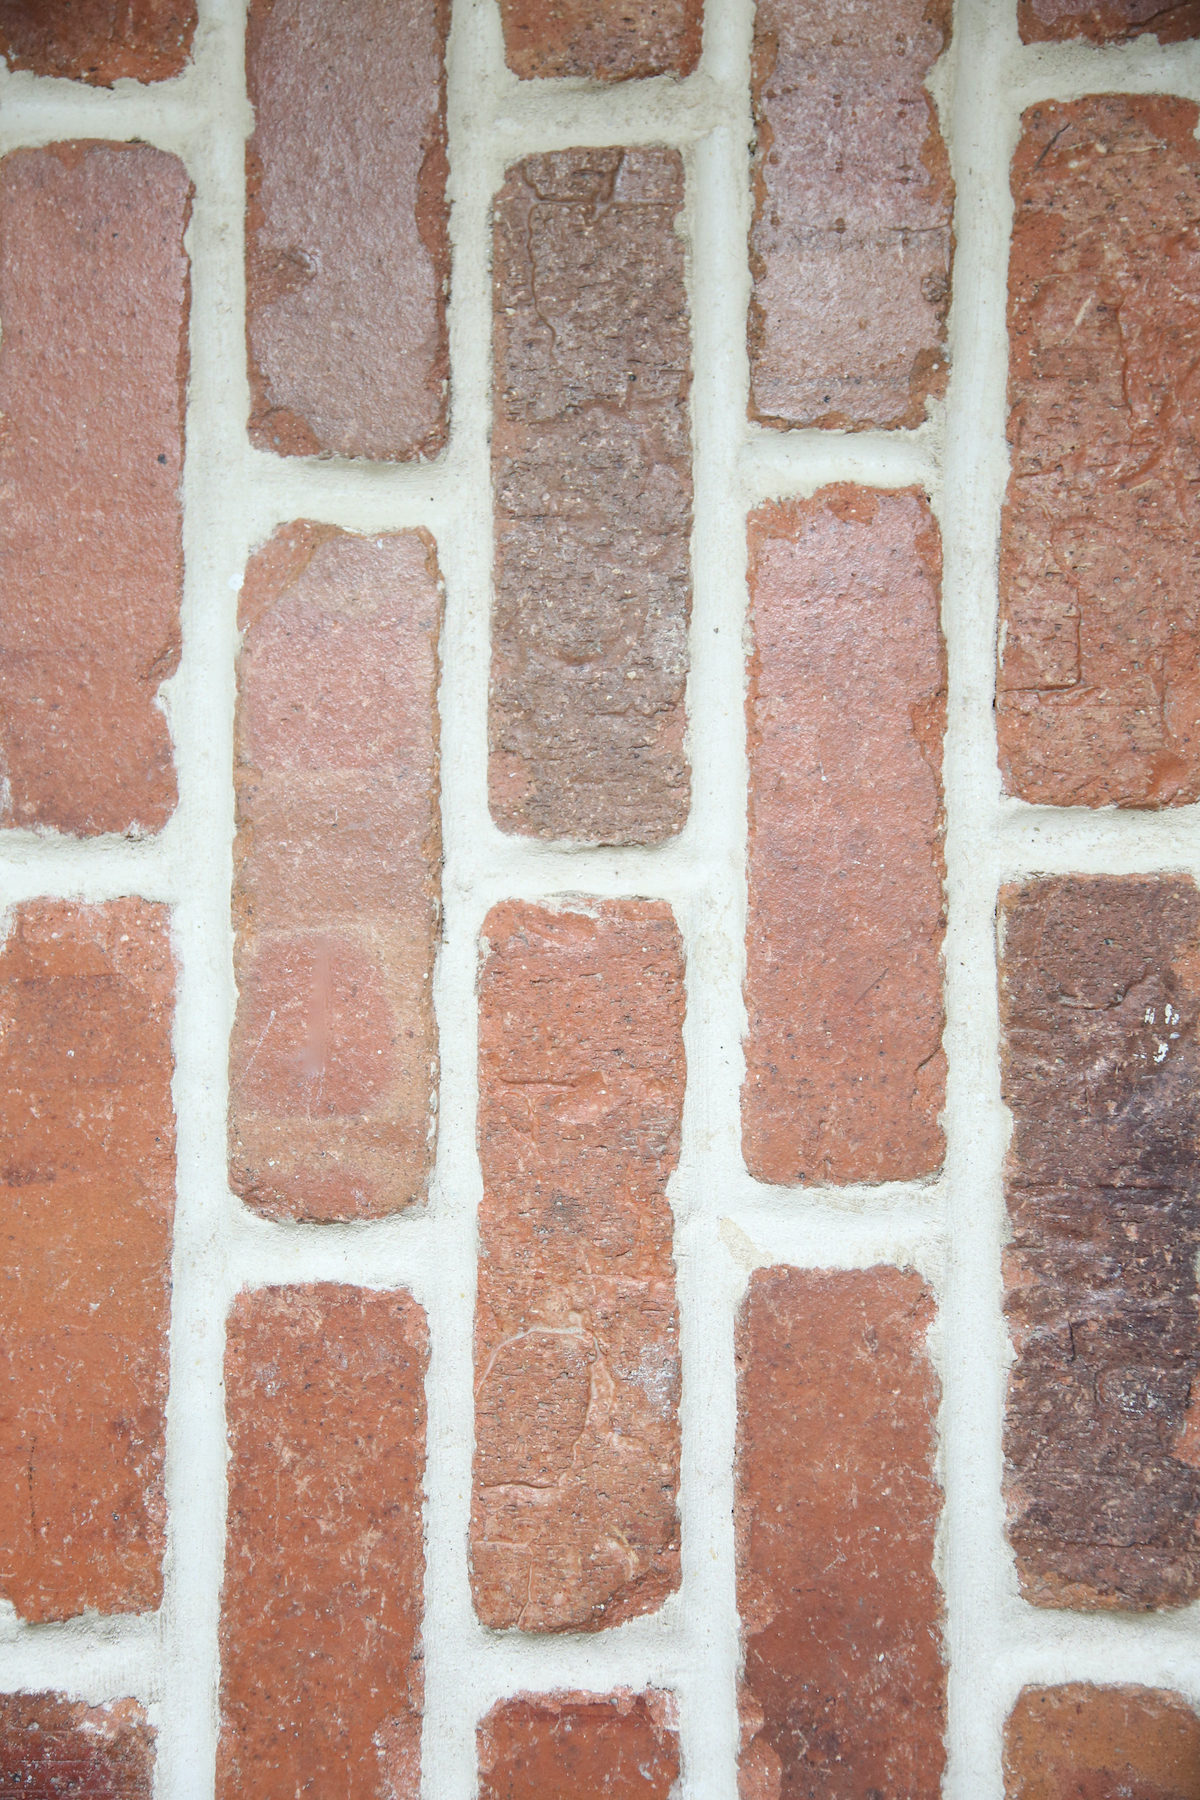 A close up of brick floors.